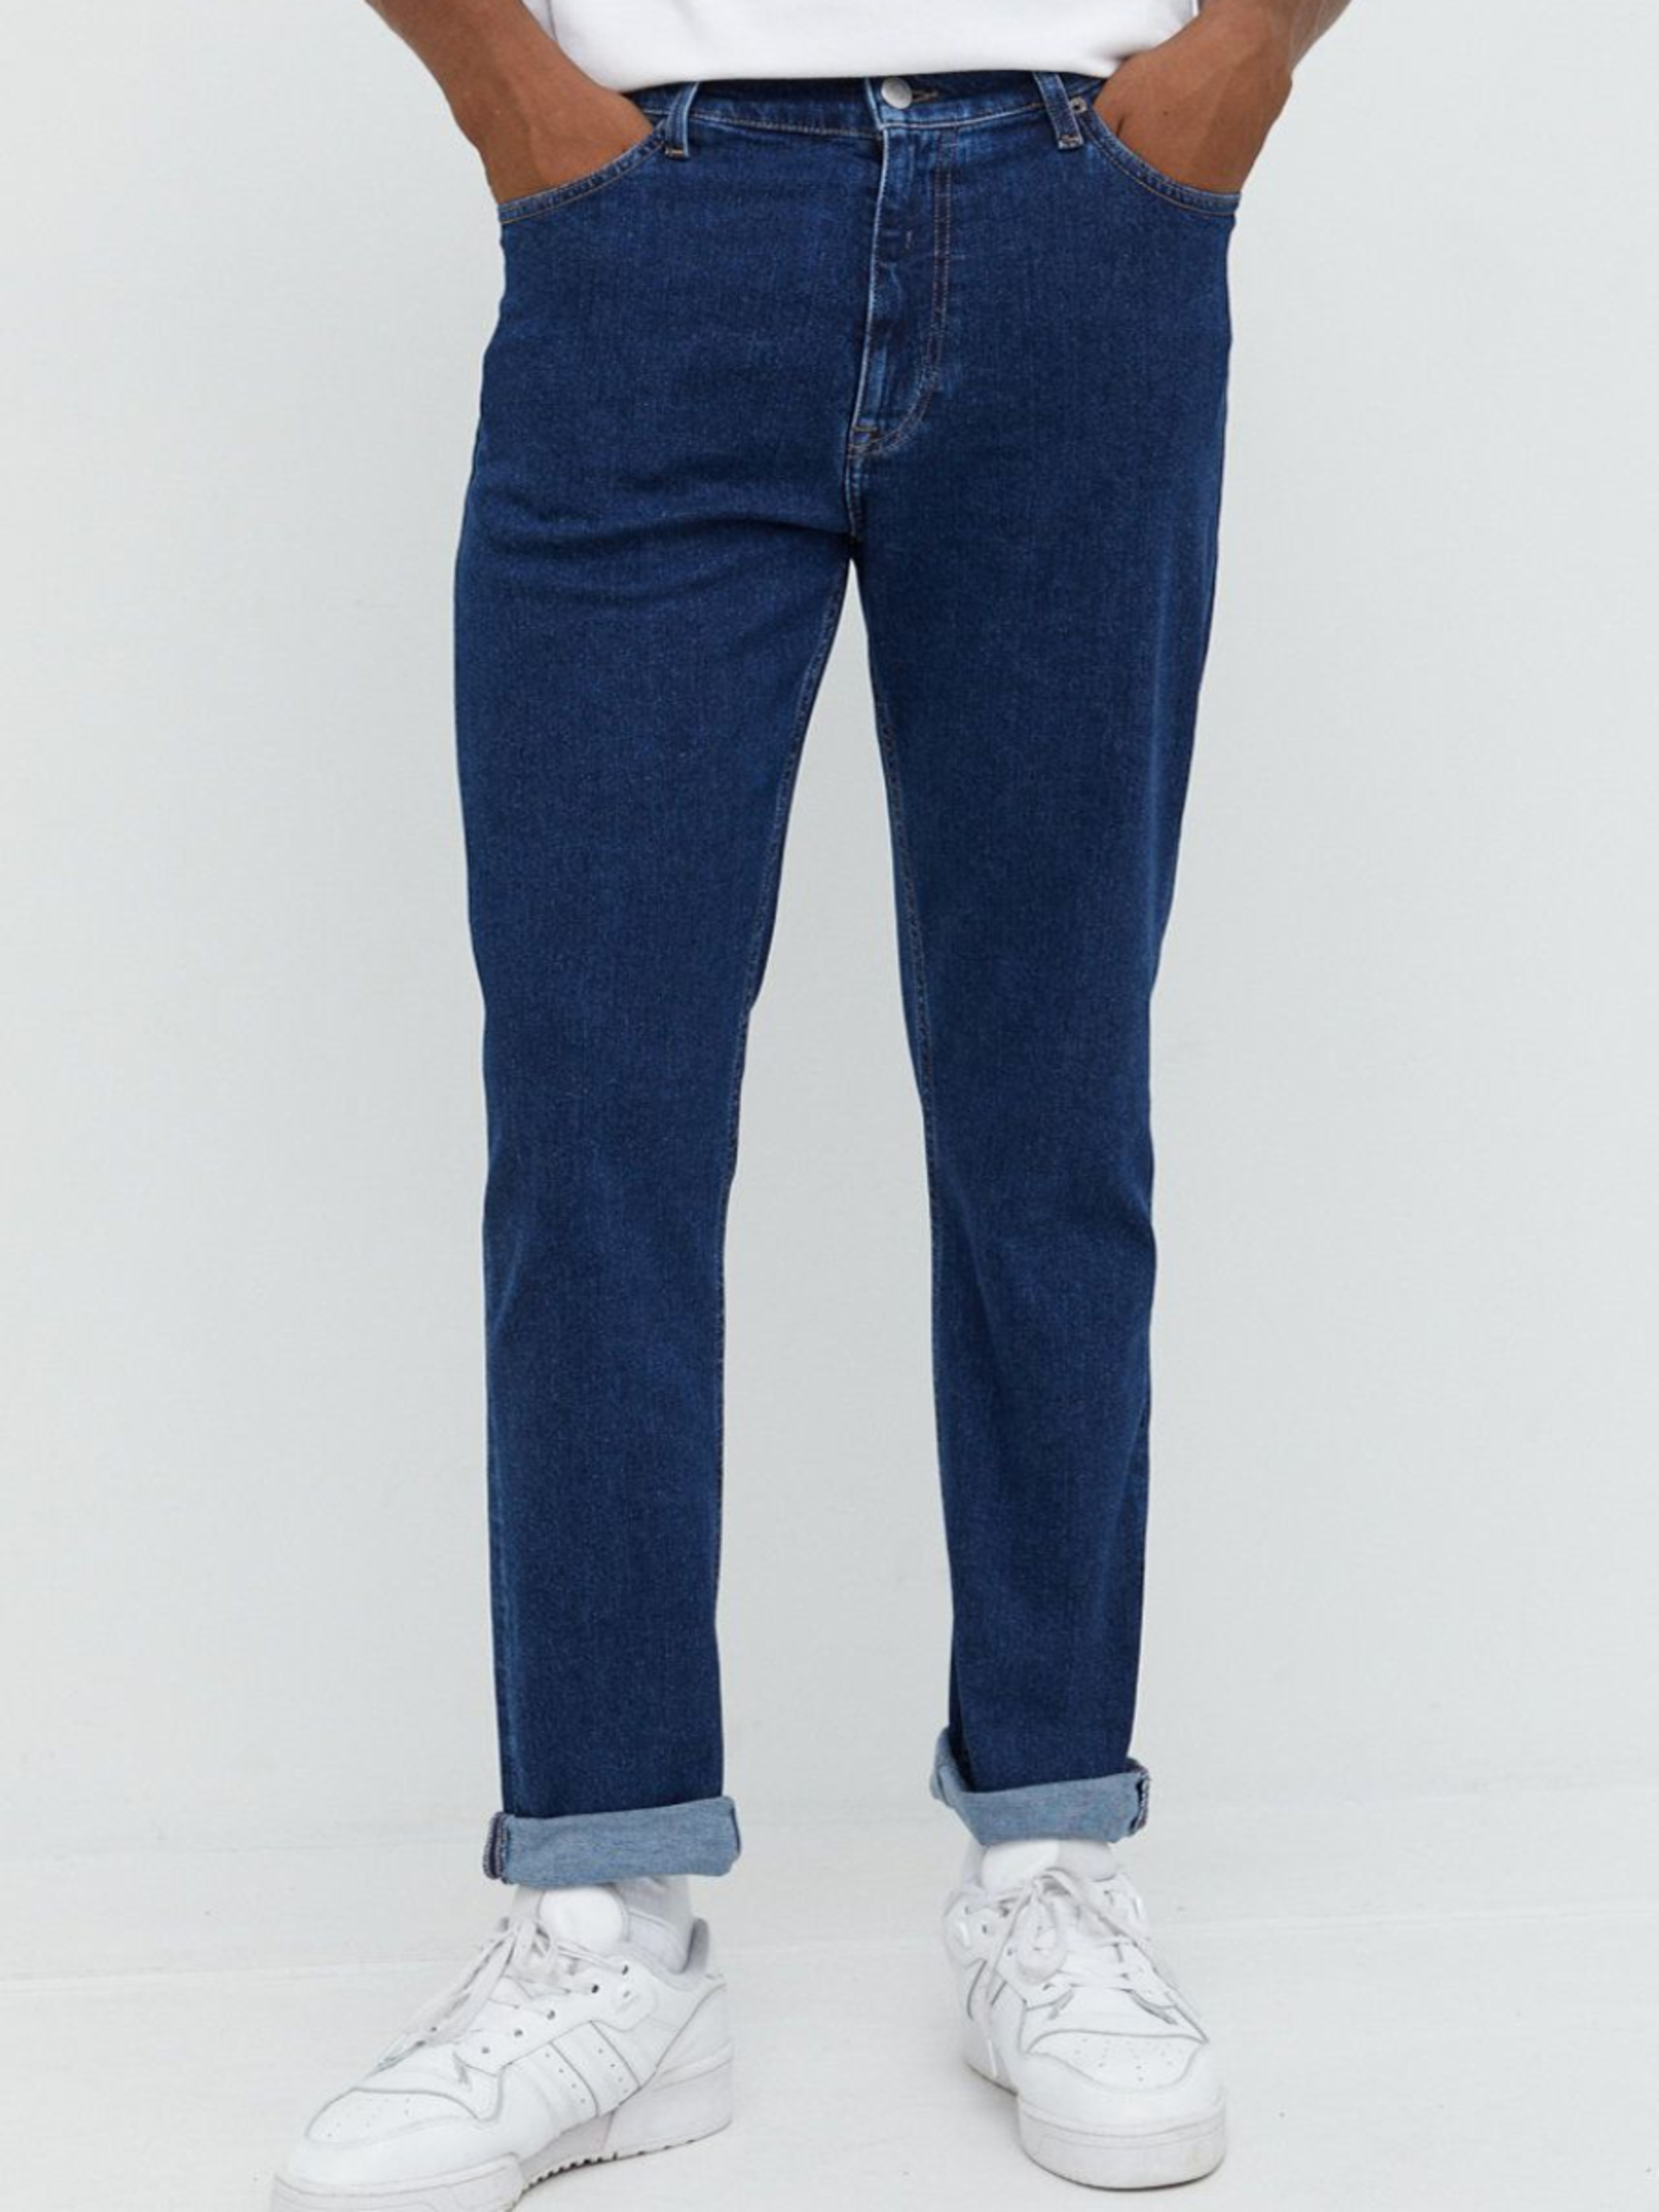 Tommy Jeans pánské modré džíny DAD JEAN - 34/32 (1BK)